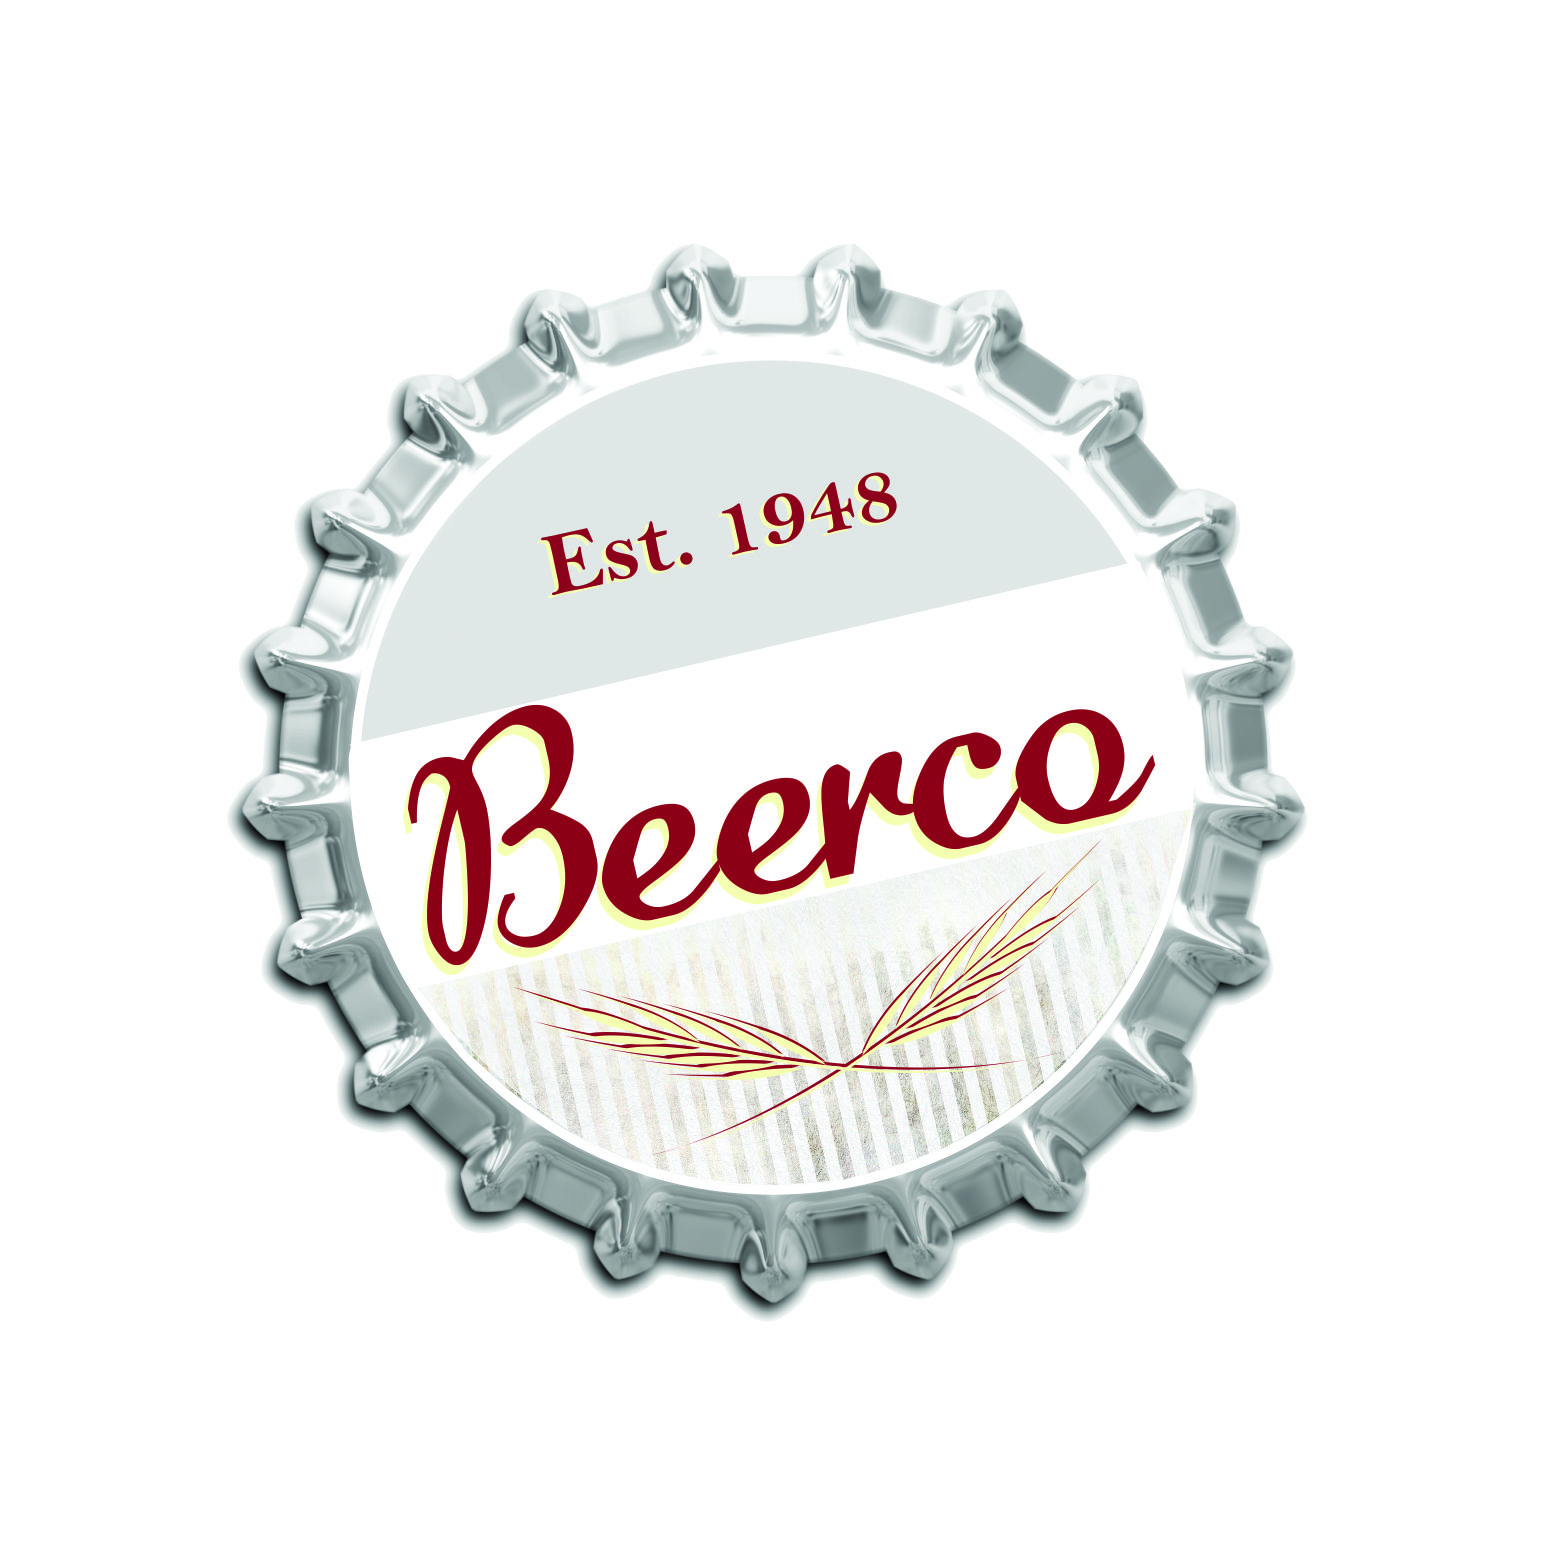 Beerco (Nivel 2)